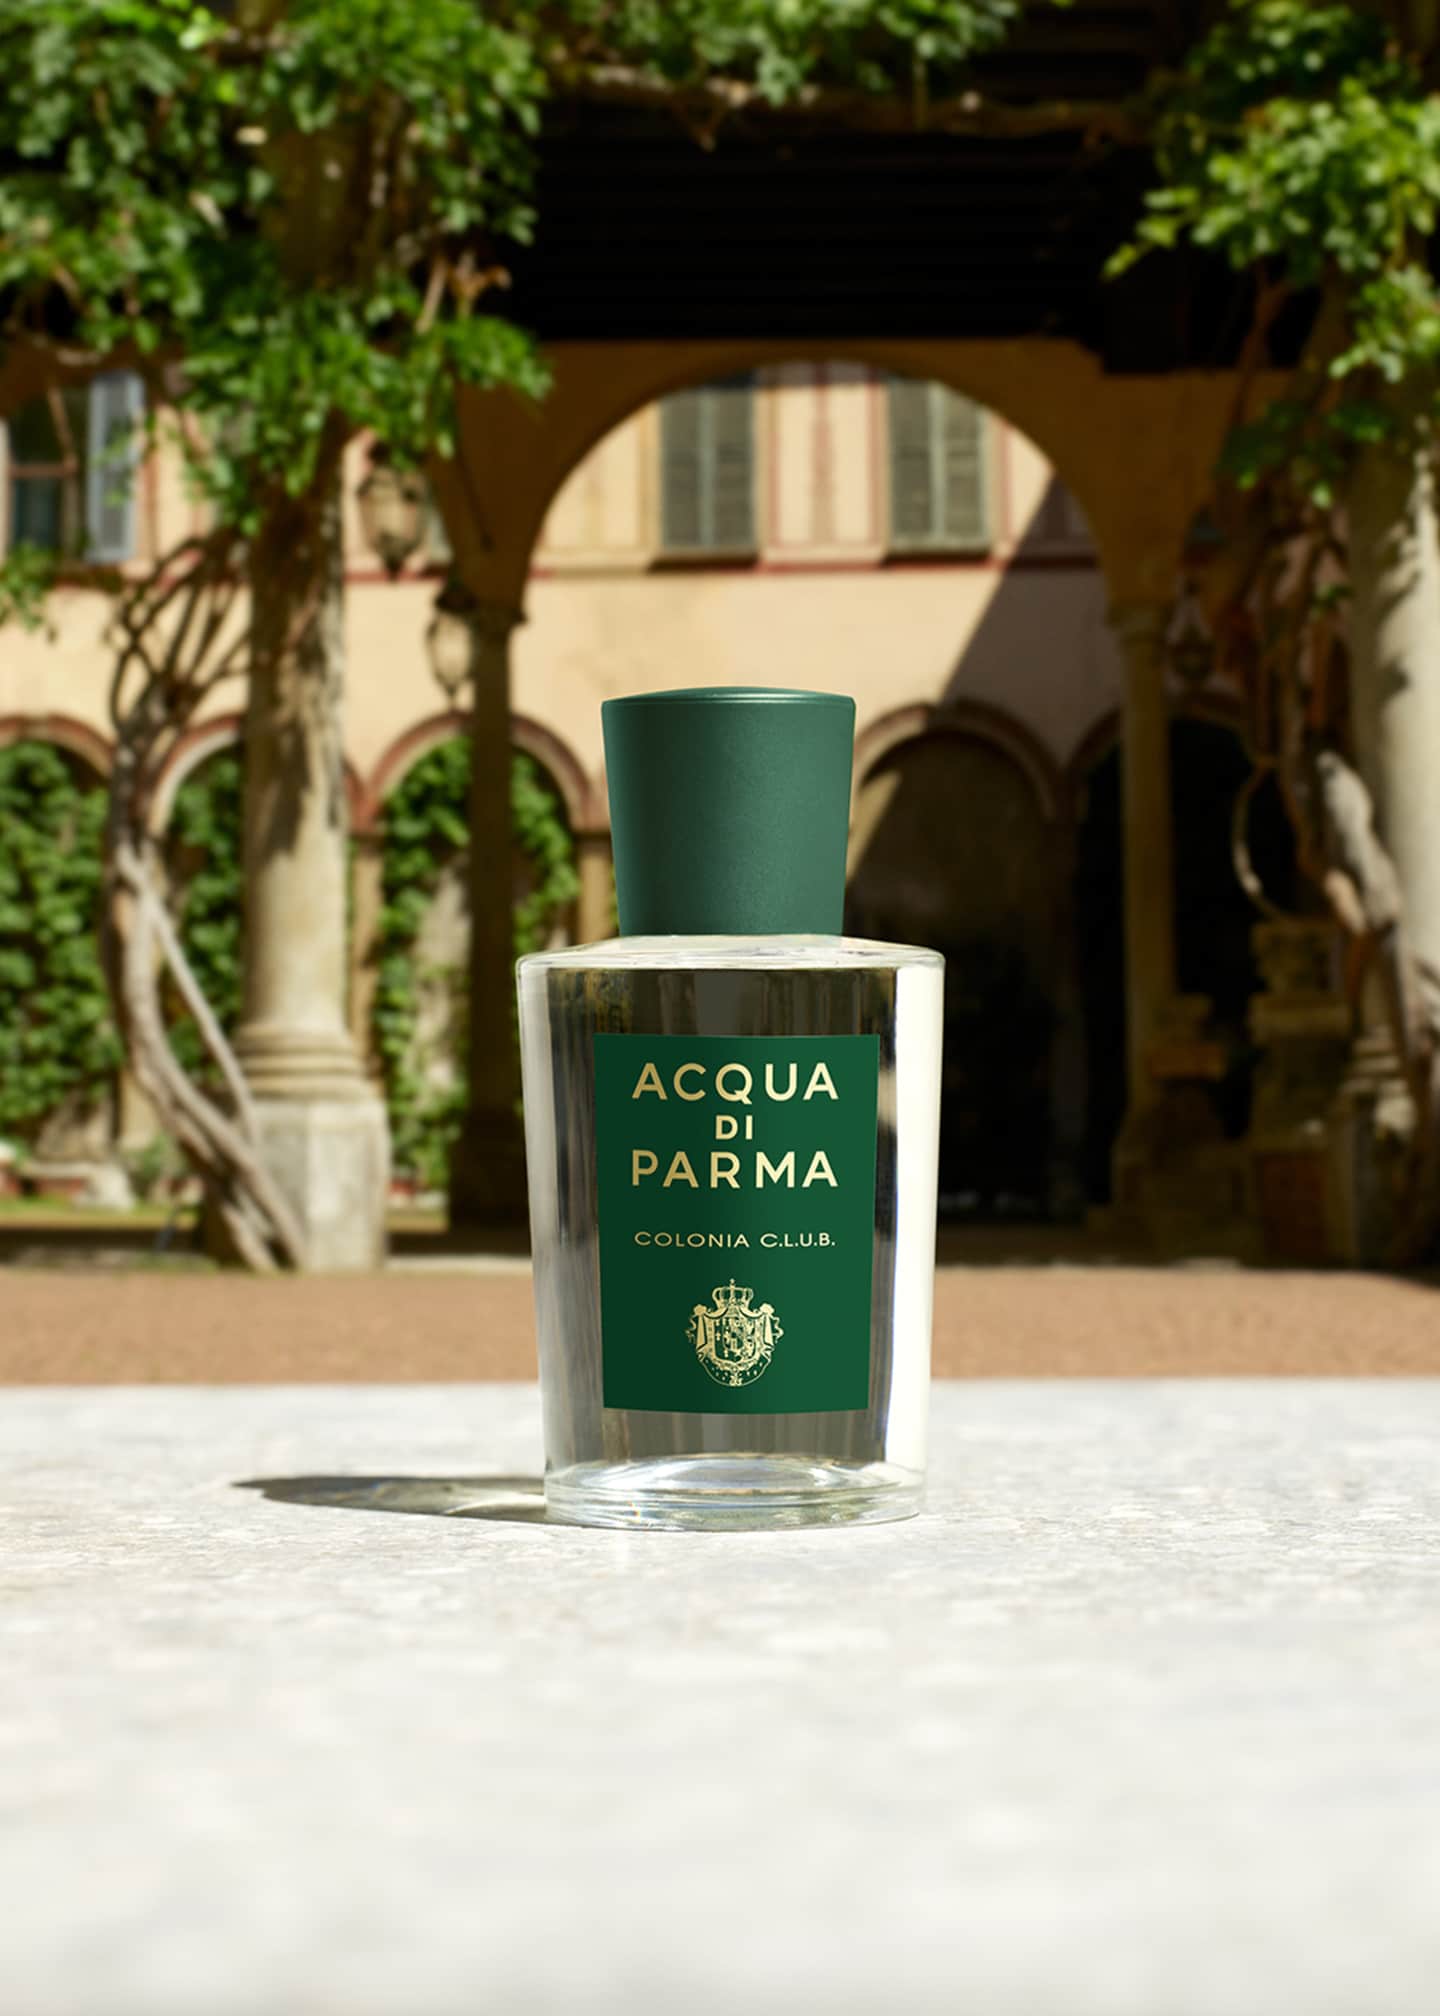 Acqua di Parma - Colonia C.L.U.B. Eau de Cologne 1.7 oz.